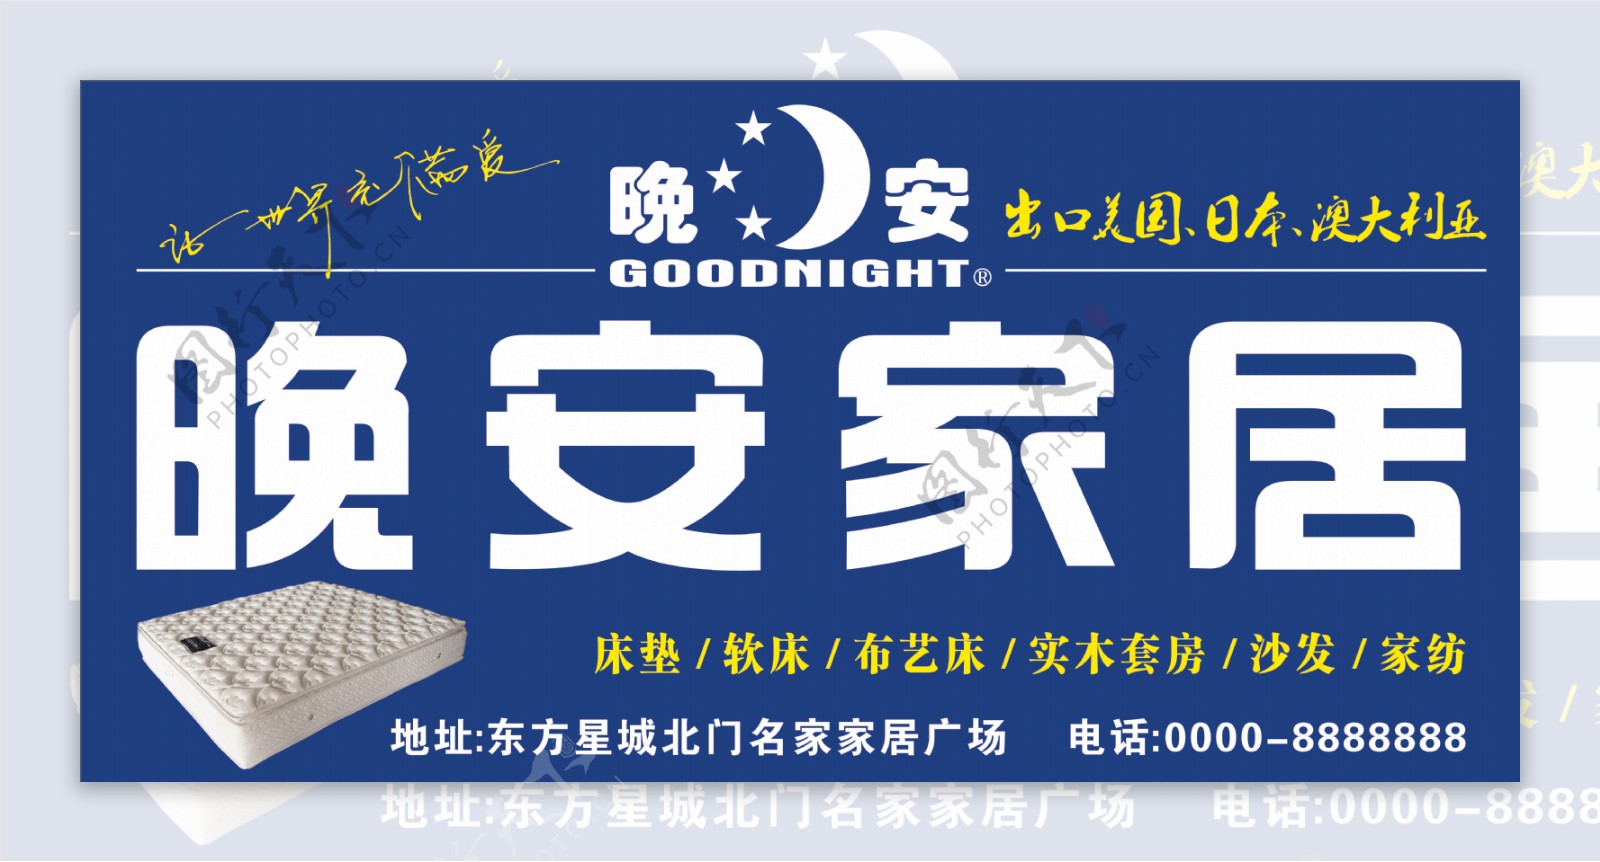 晚安家居晚安床垫CDR橱窗海报设计